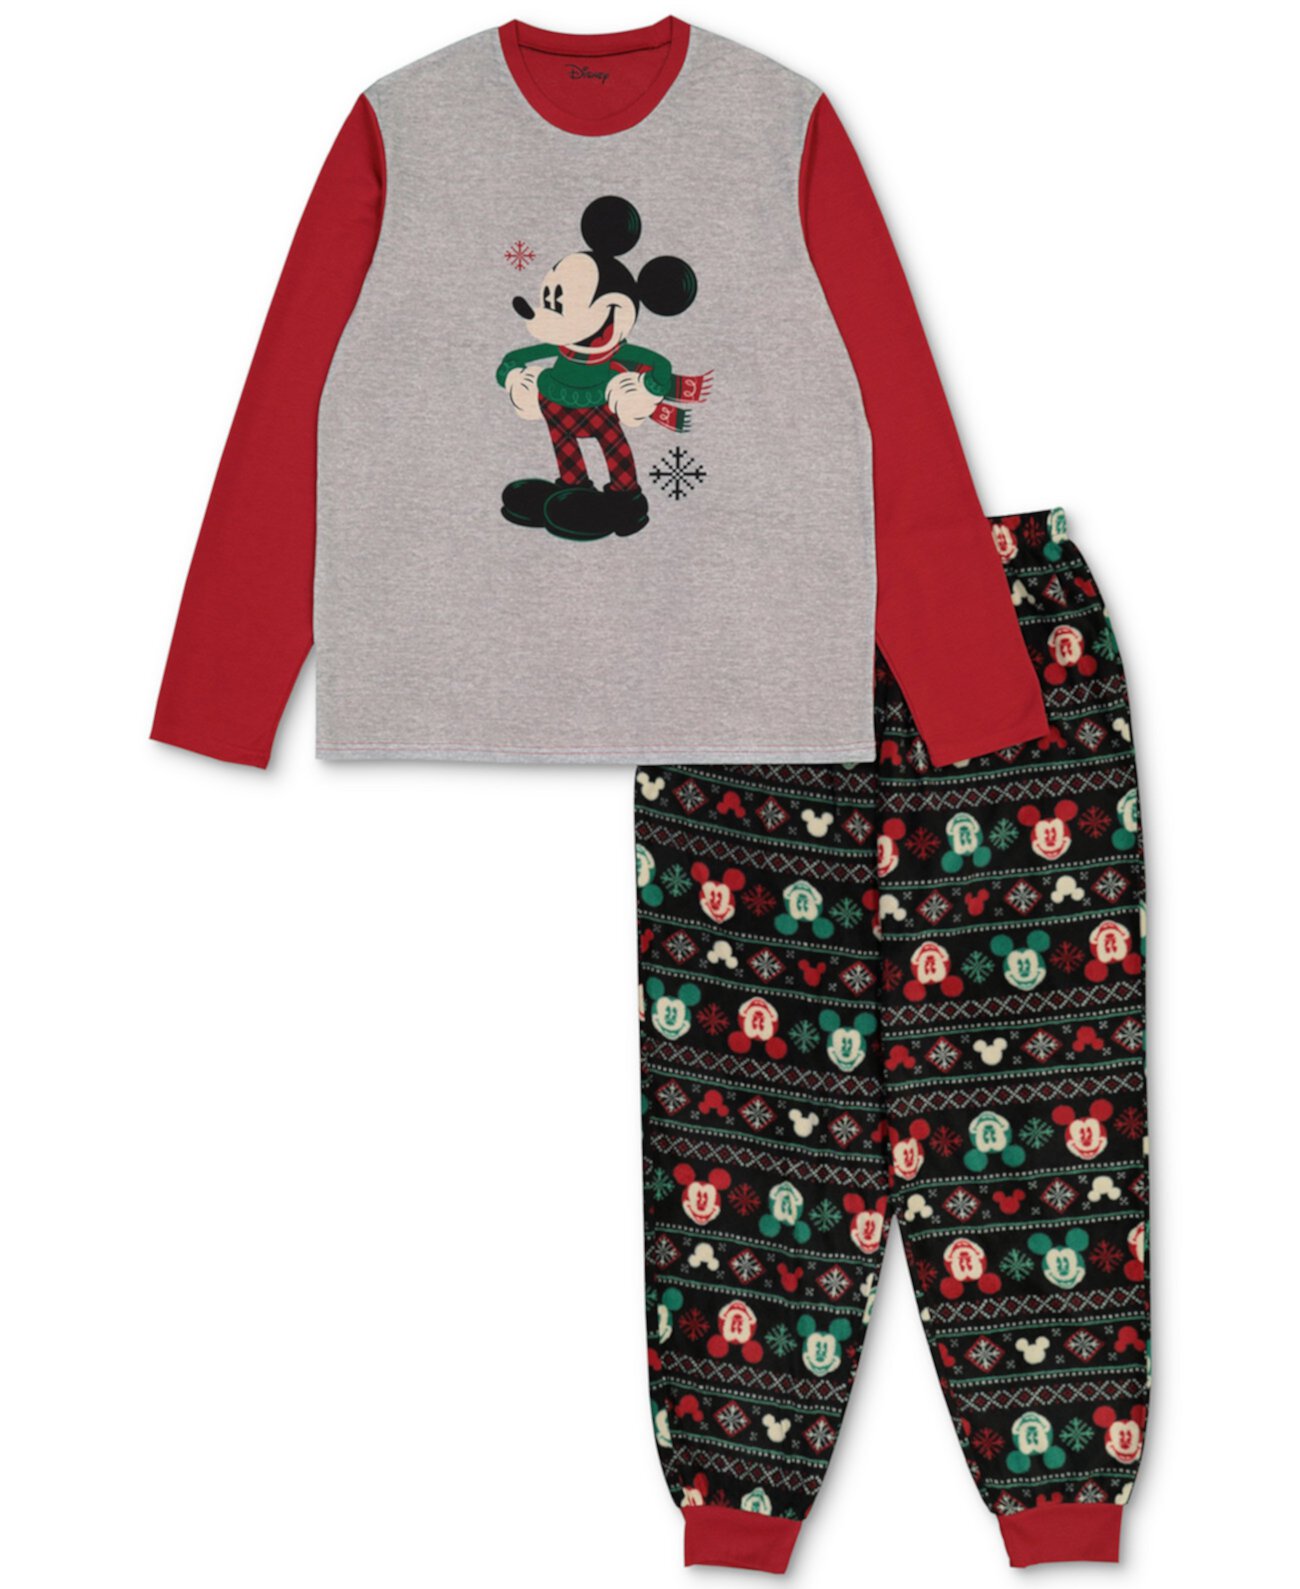 Подходящий мужской праздничный семейный пижамный комплект с Микки и Минни Briefly Stated